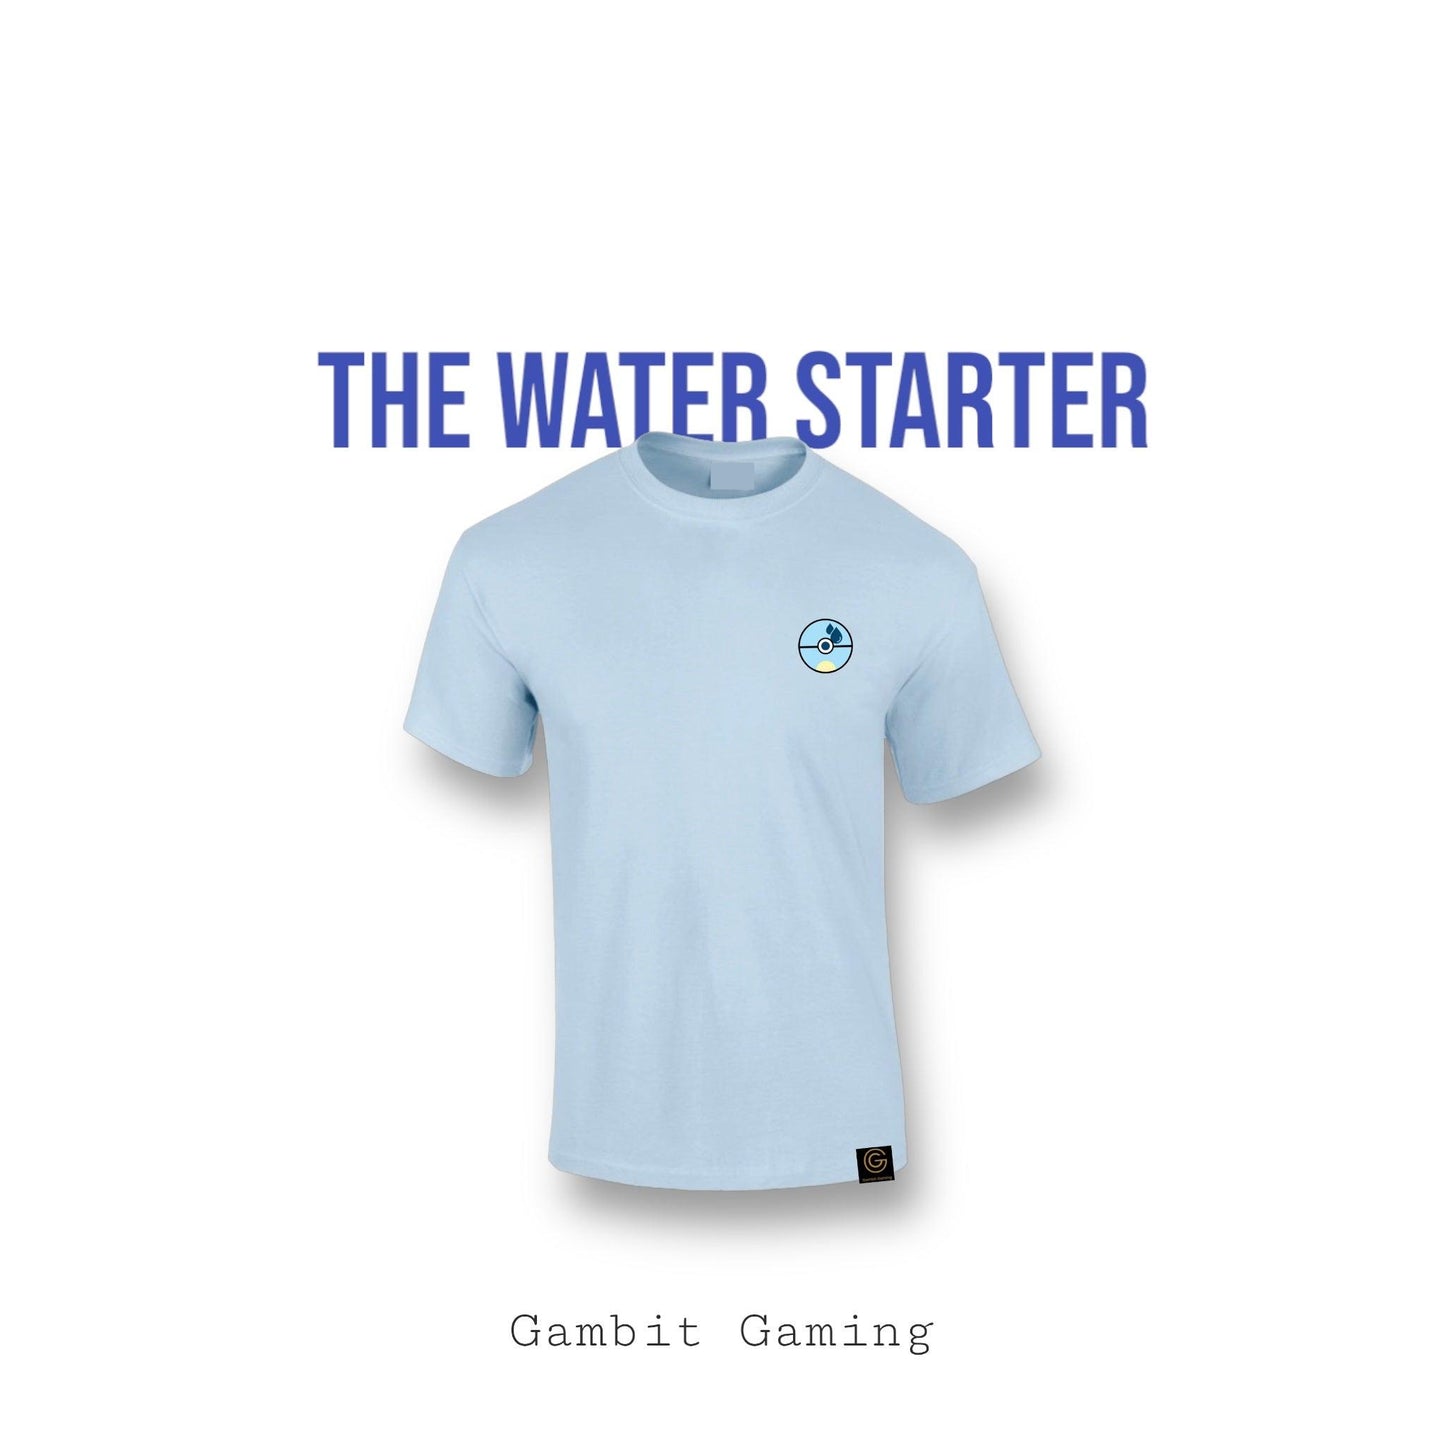 The Water Starter - Gambit Gaming